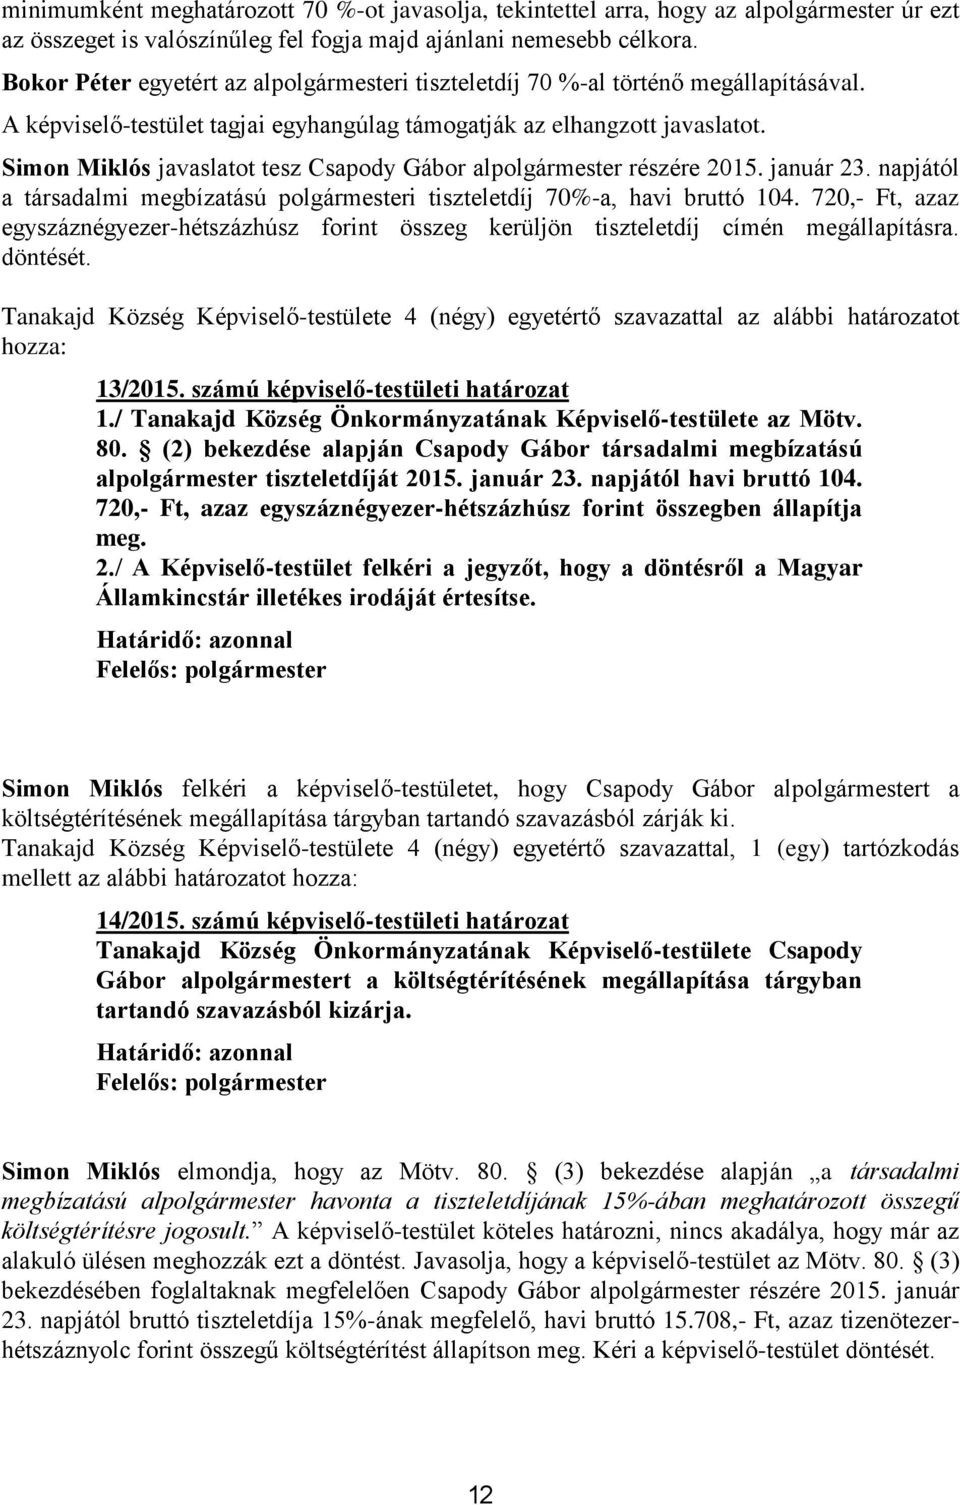 Simon Miklós javaslatot tesz Csapody Gábor alpolgármester részére 2015. január 23. napjától a társadalmi megbízatású polgármesteri tiszteletdíj 70%-a, havi bruttó 104.